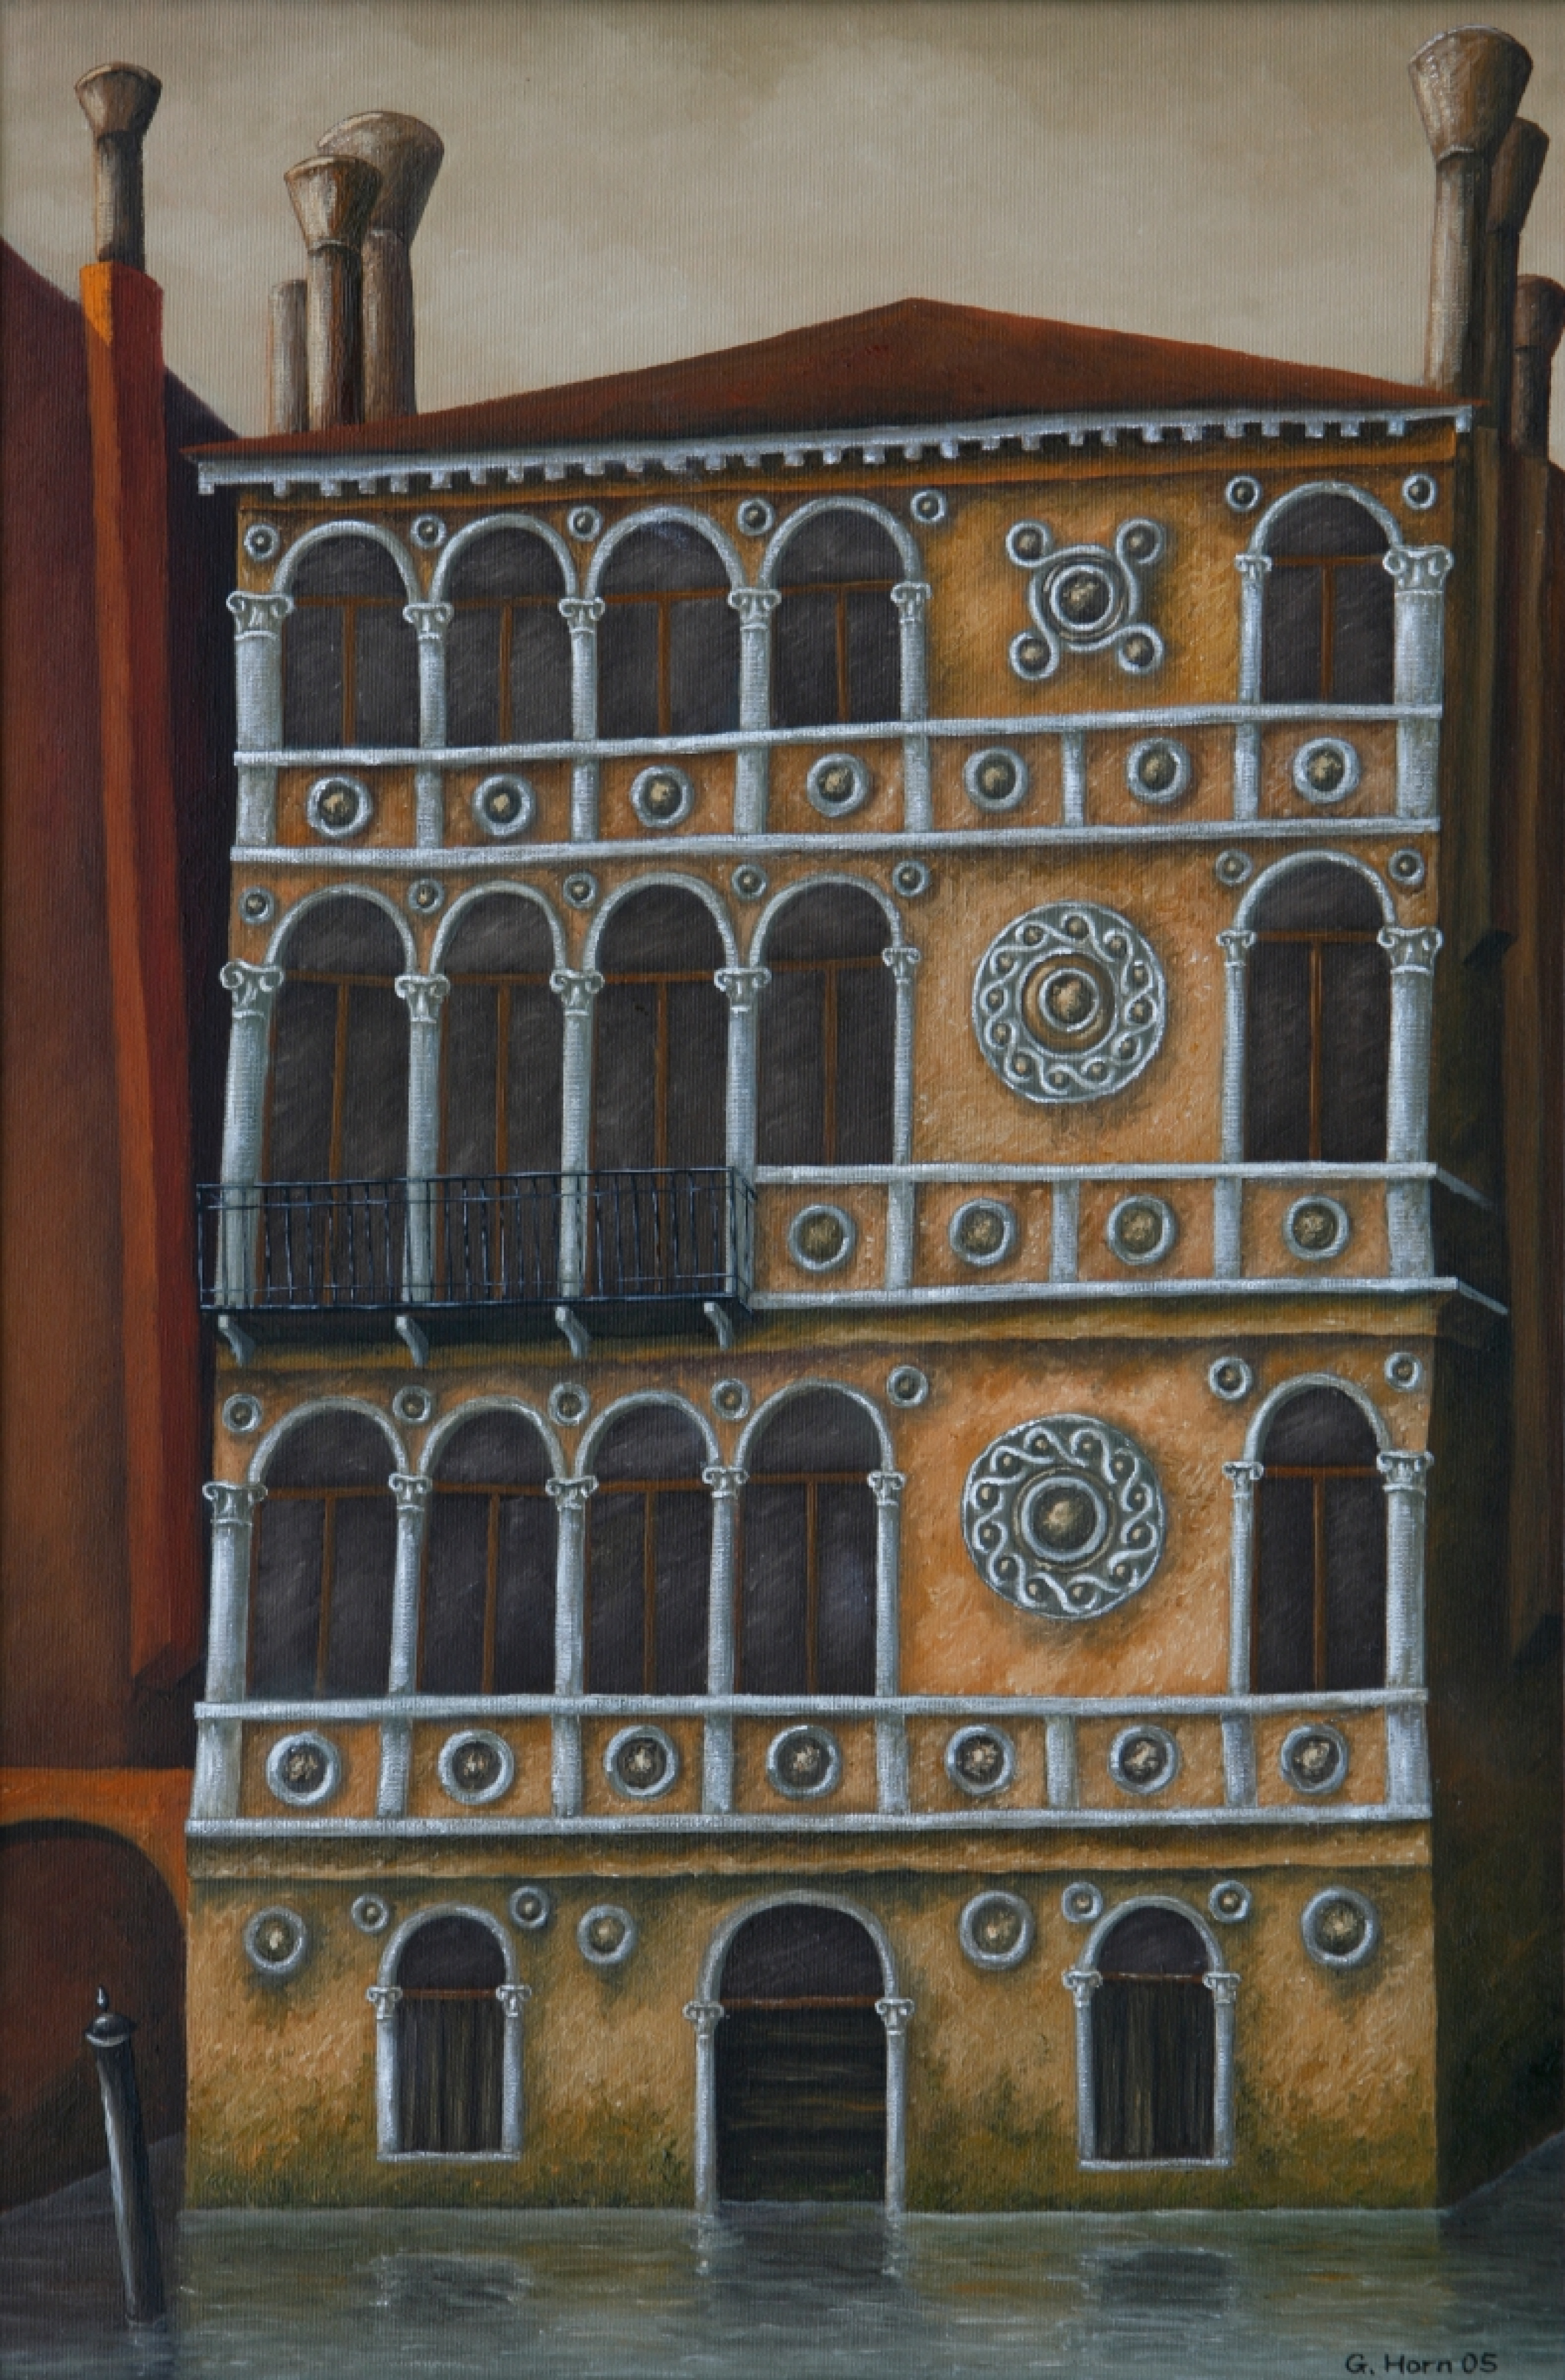 Abbildung von Palazzo ca da Mosto 2005 von Günter Horn